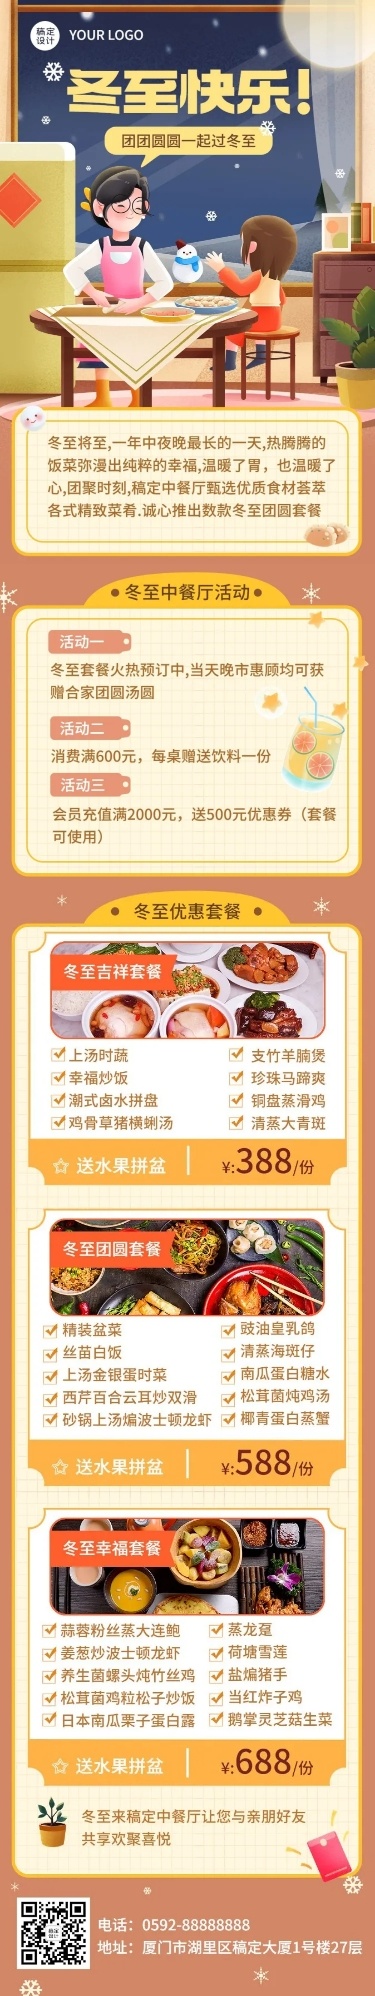 餐饮美食冬至中餐厅店铺营销活动文章长图